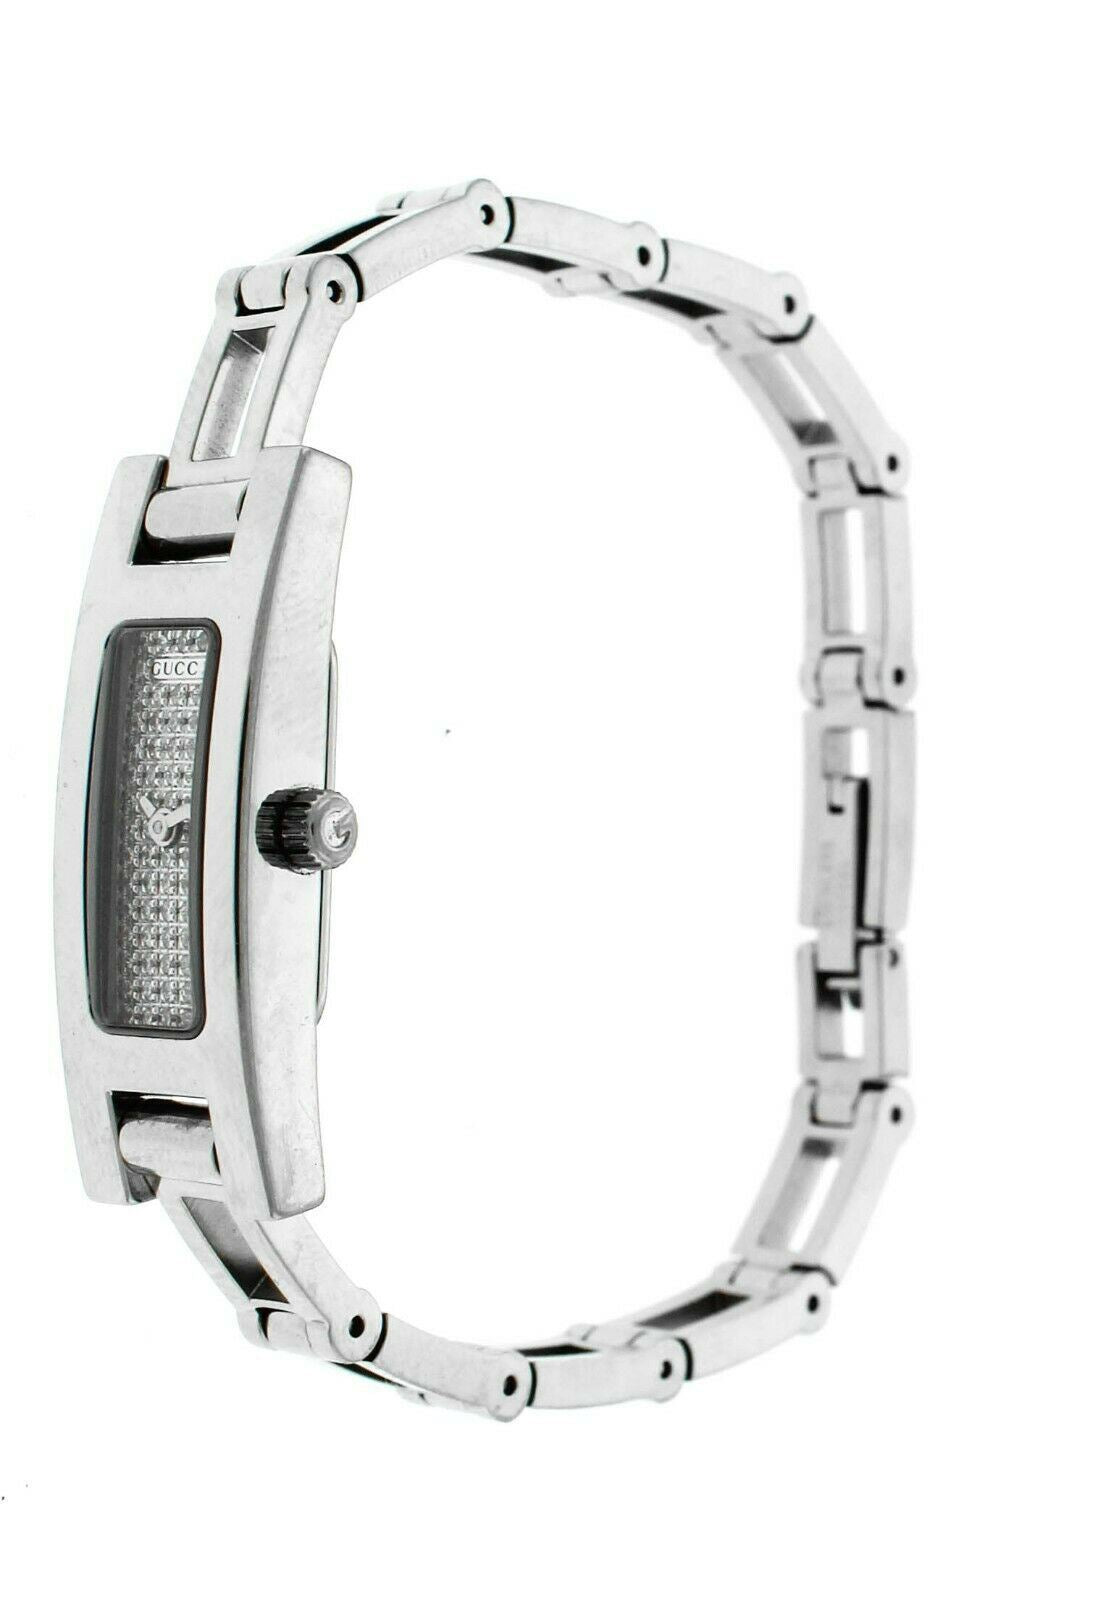 Store Display Model Gucci 3900 Diamond Dial Women's Quartz Watch YA039 – TTT